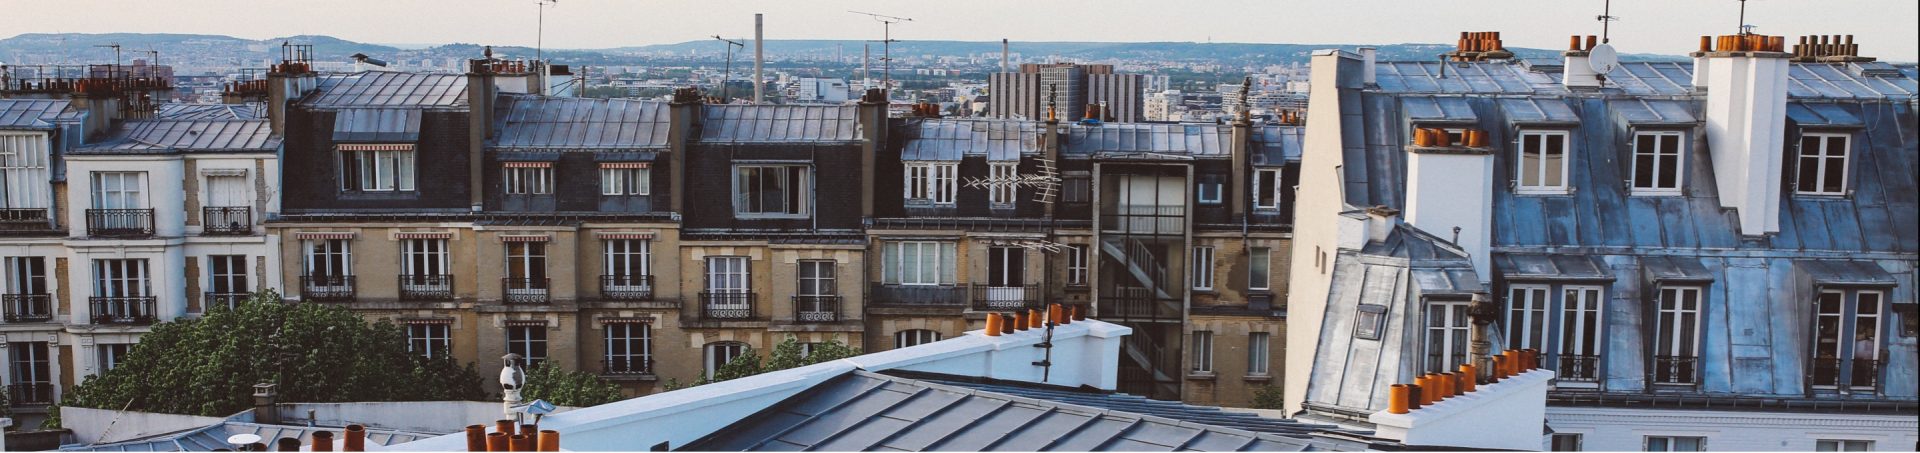 Vue des toits de Paris